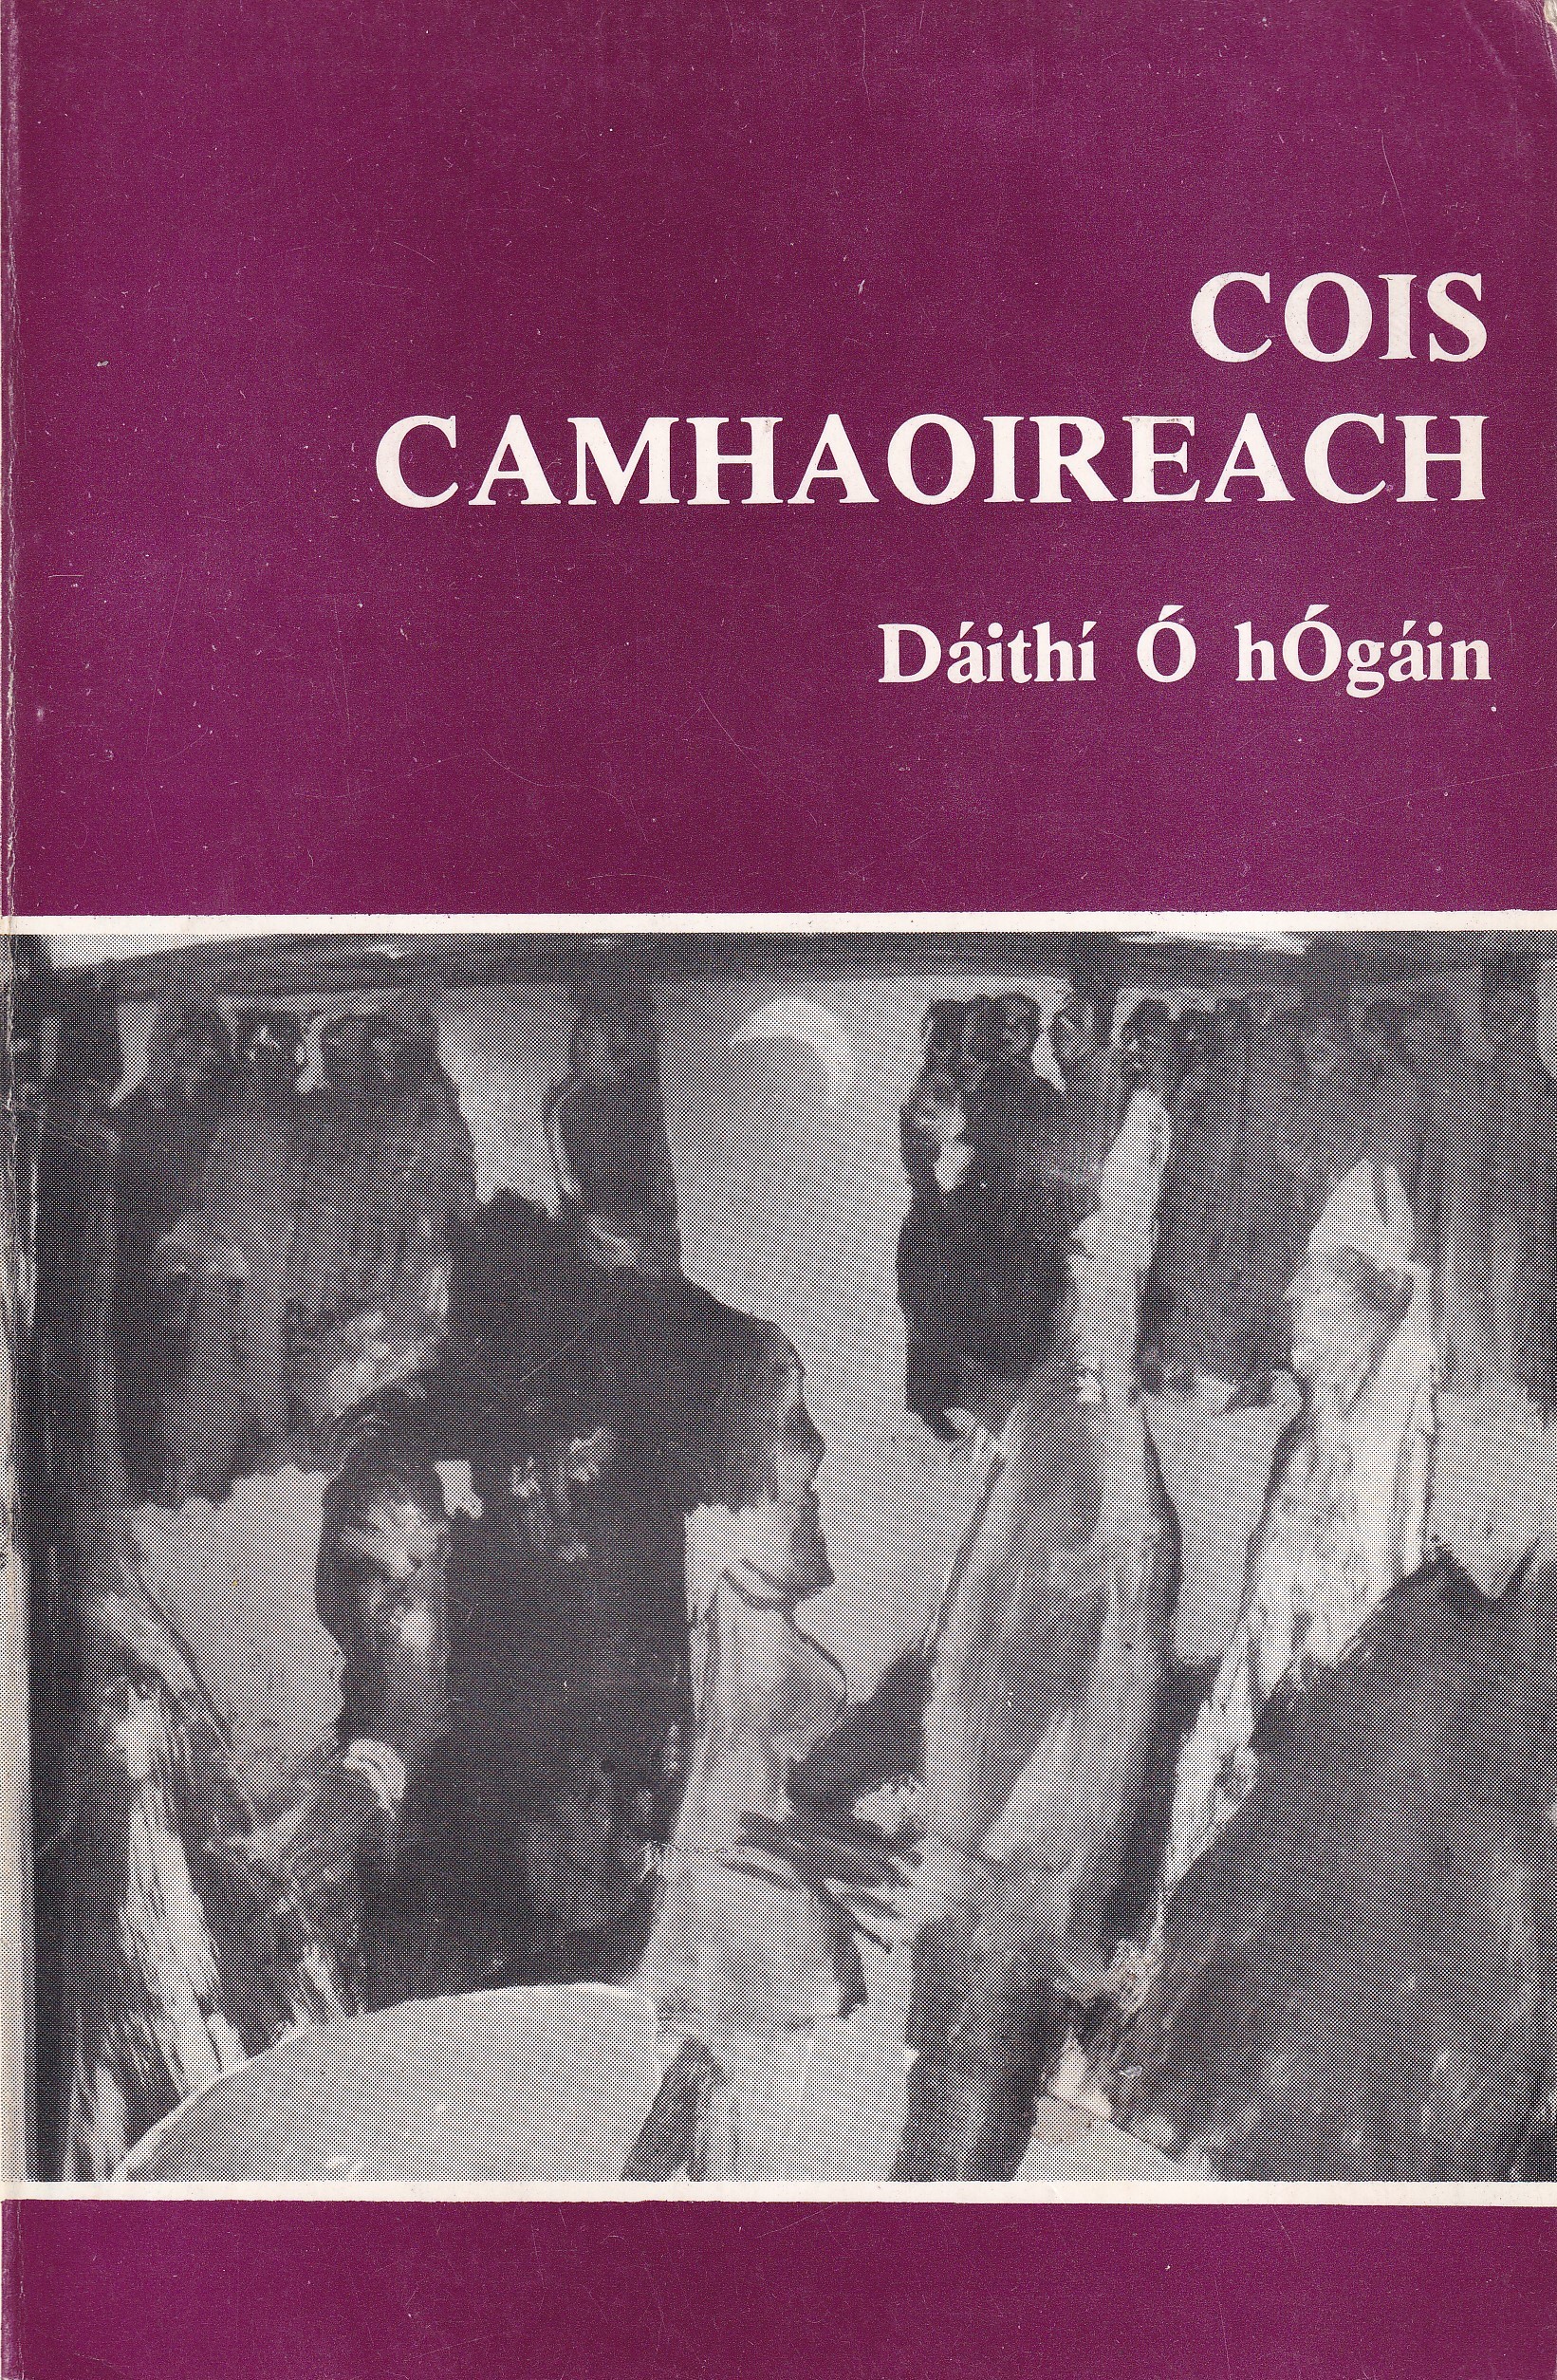 Cois Camhaoireach by Dáithí Ó hÓgáin